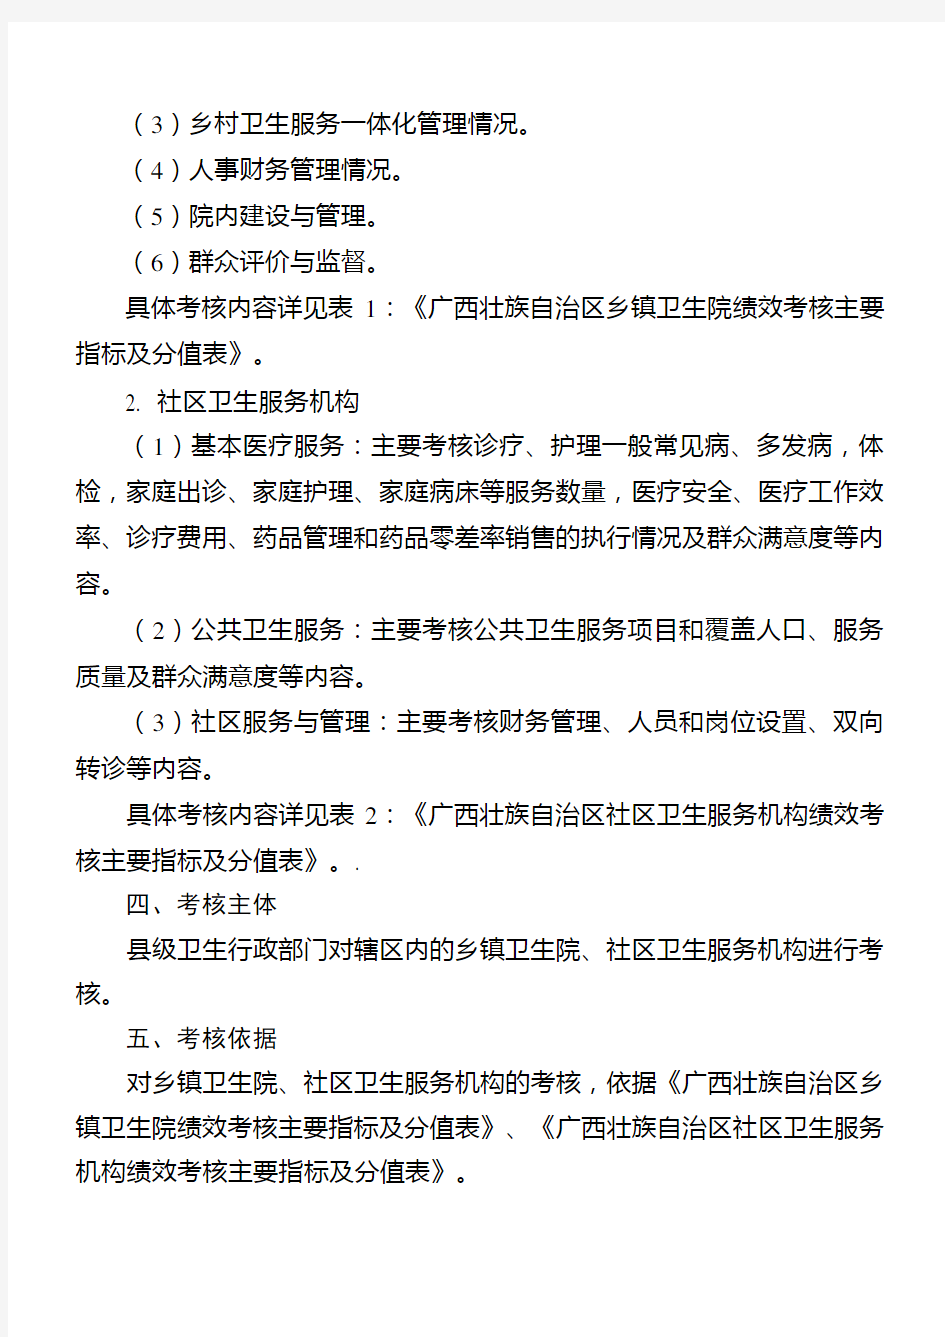 广西壮族自治区基层医疗卫生机构绩效考核办法(试行)